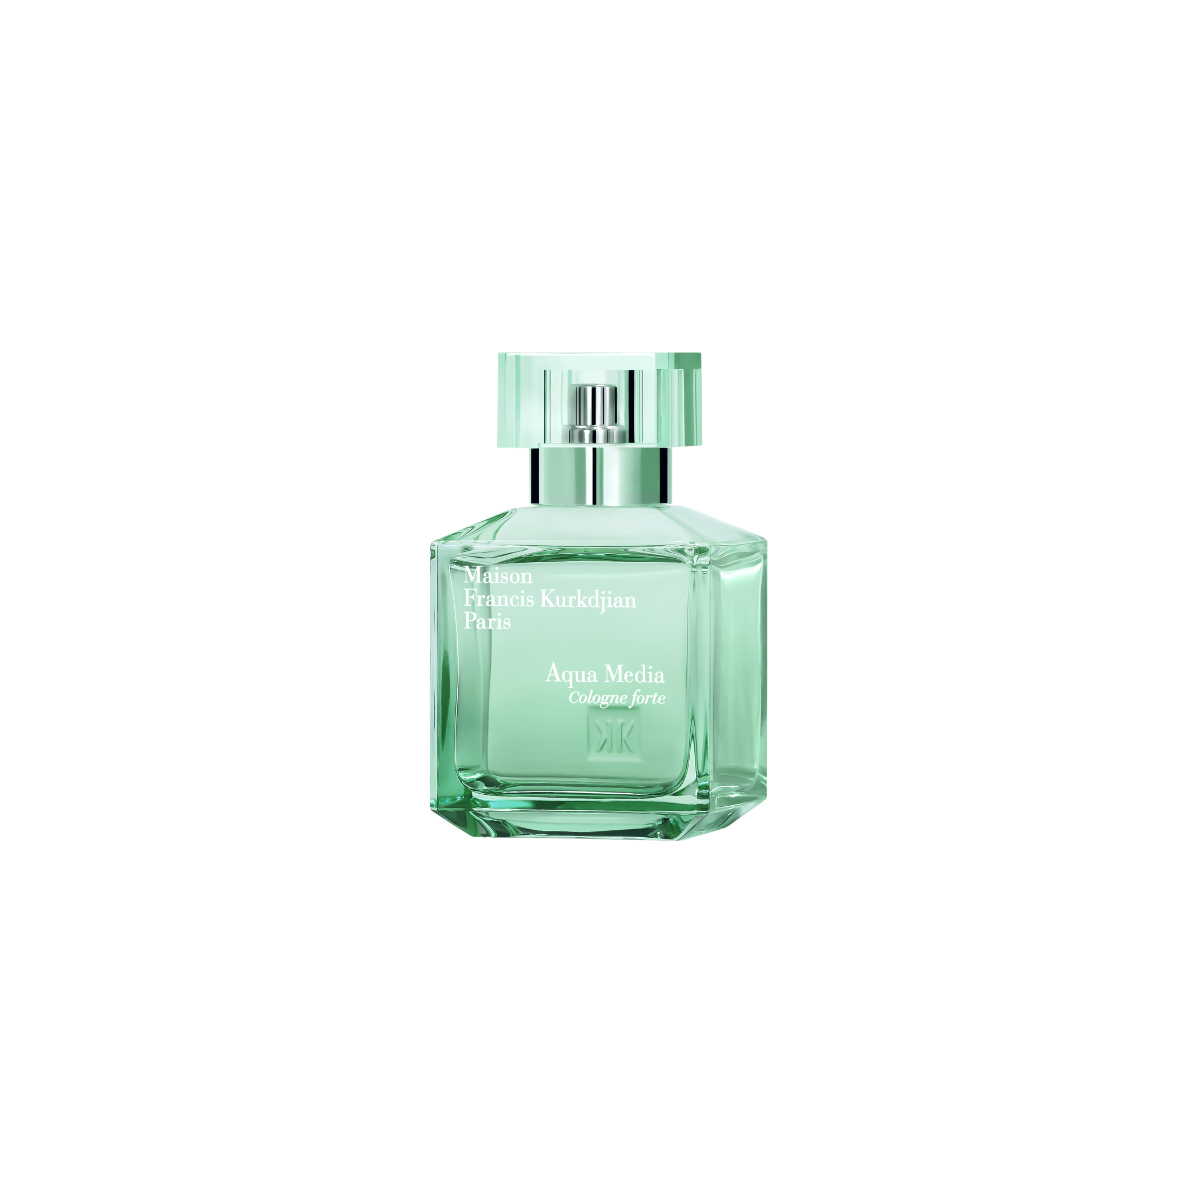 Francis Kurkdjian Introduces His New Eau De Parfum: Aqua Media Cologne Forte